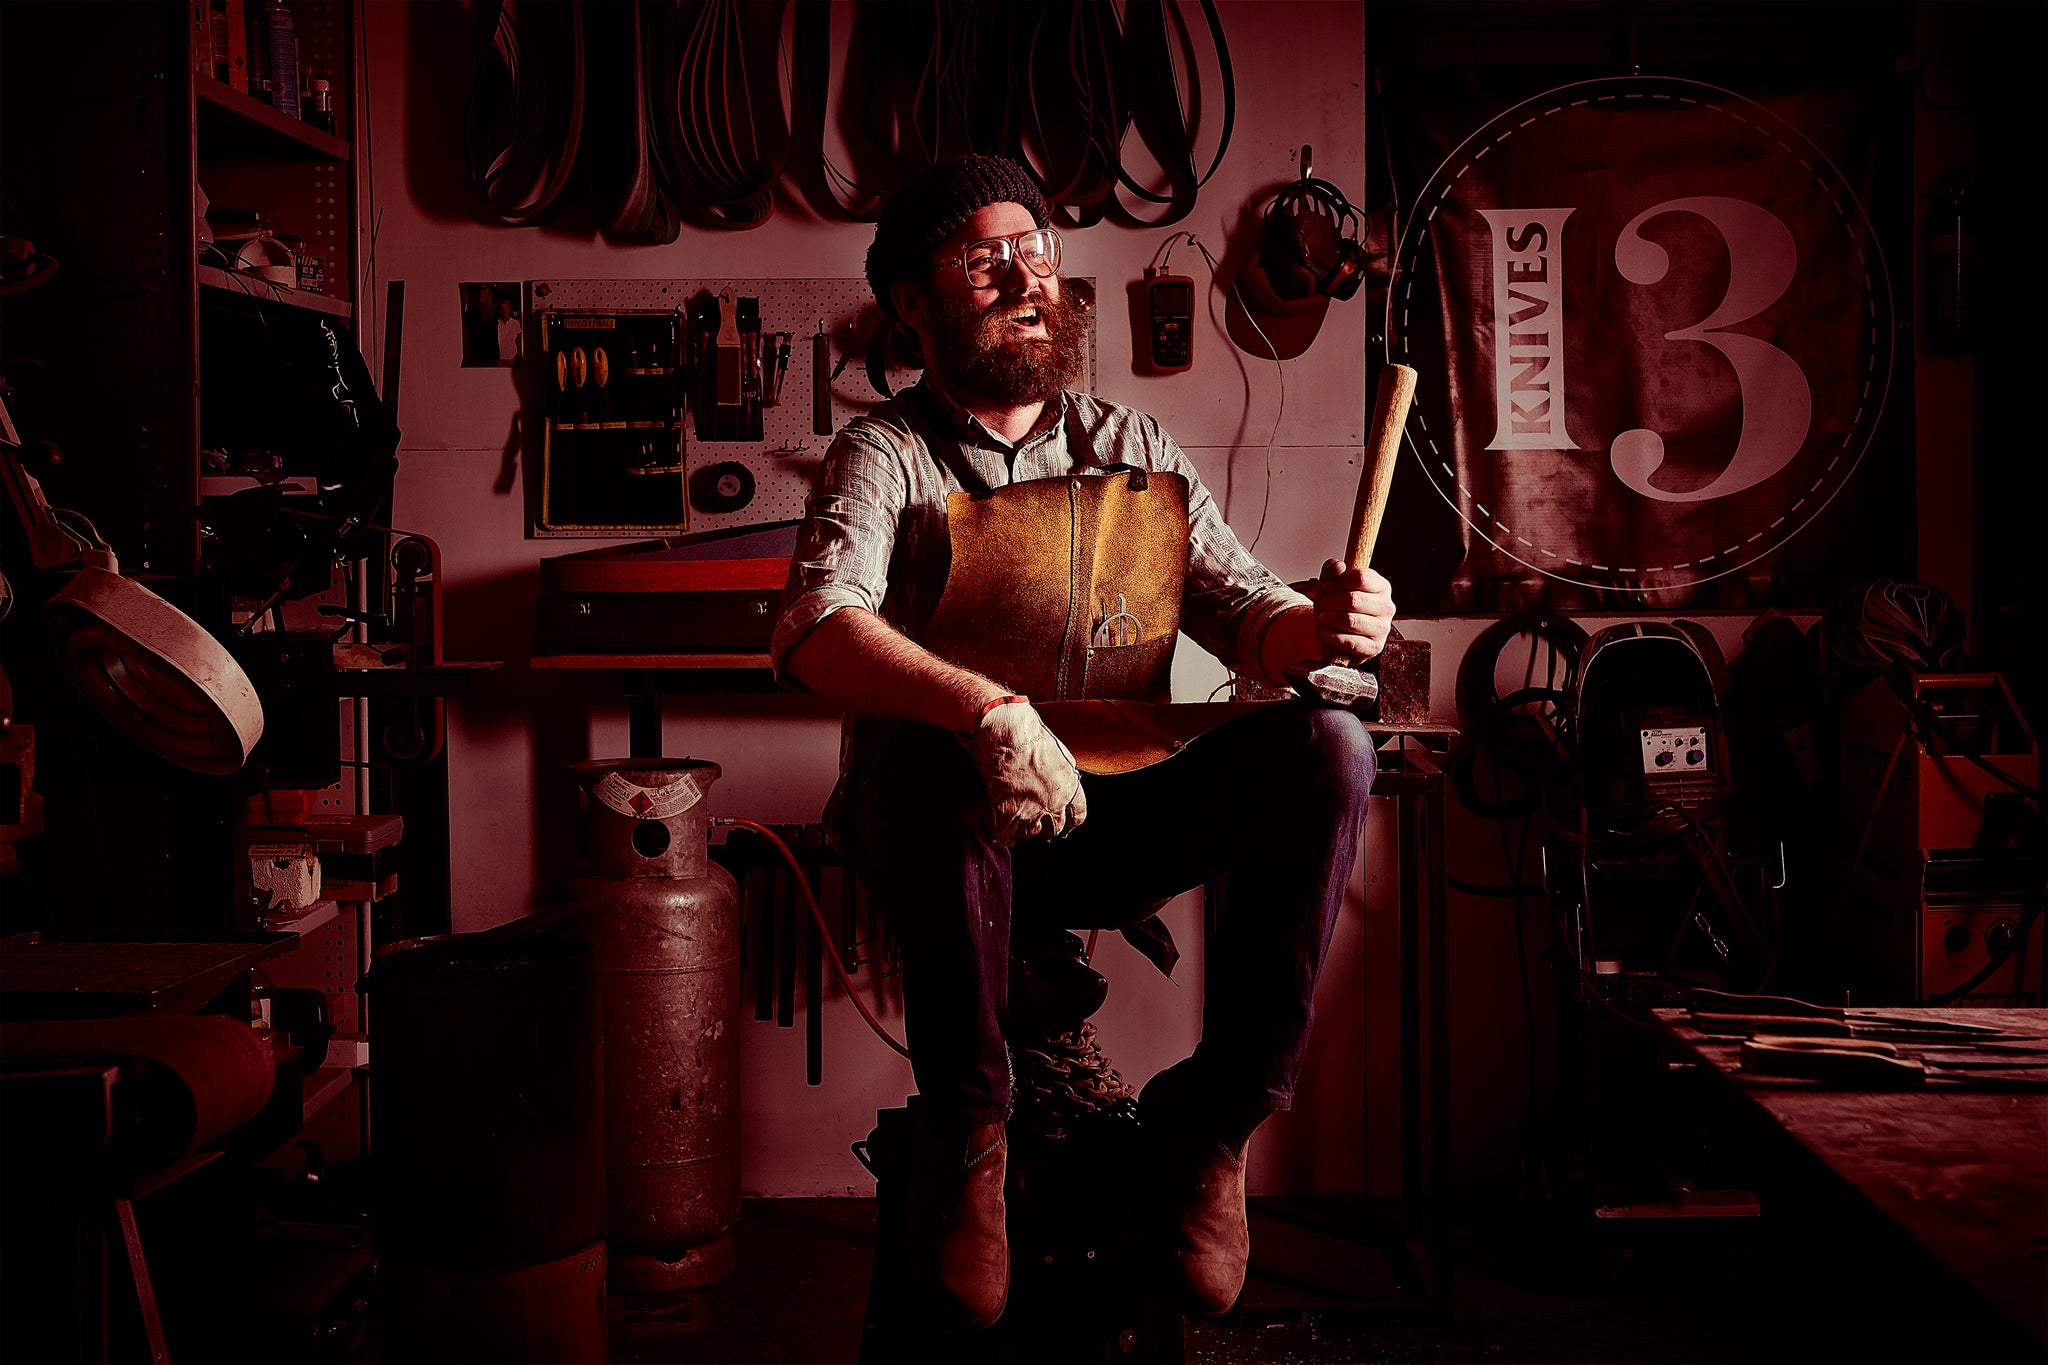 melbourne australia workshop collingwood knifemaker blacksmith anvil 13knives 